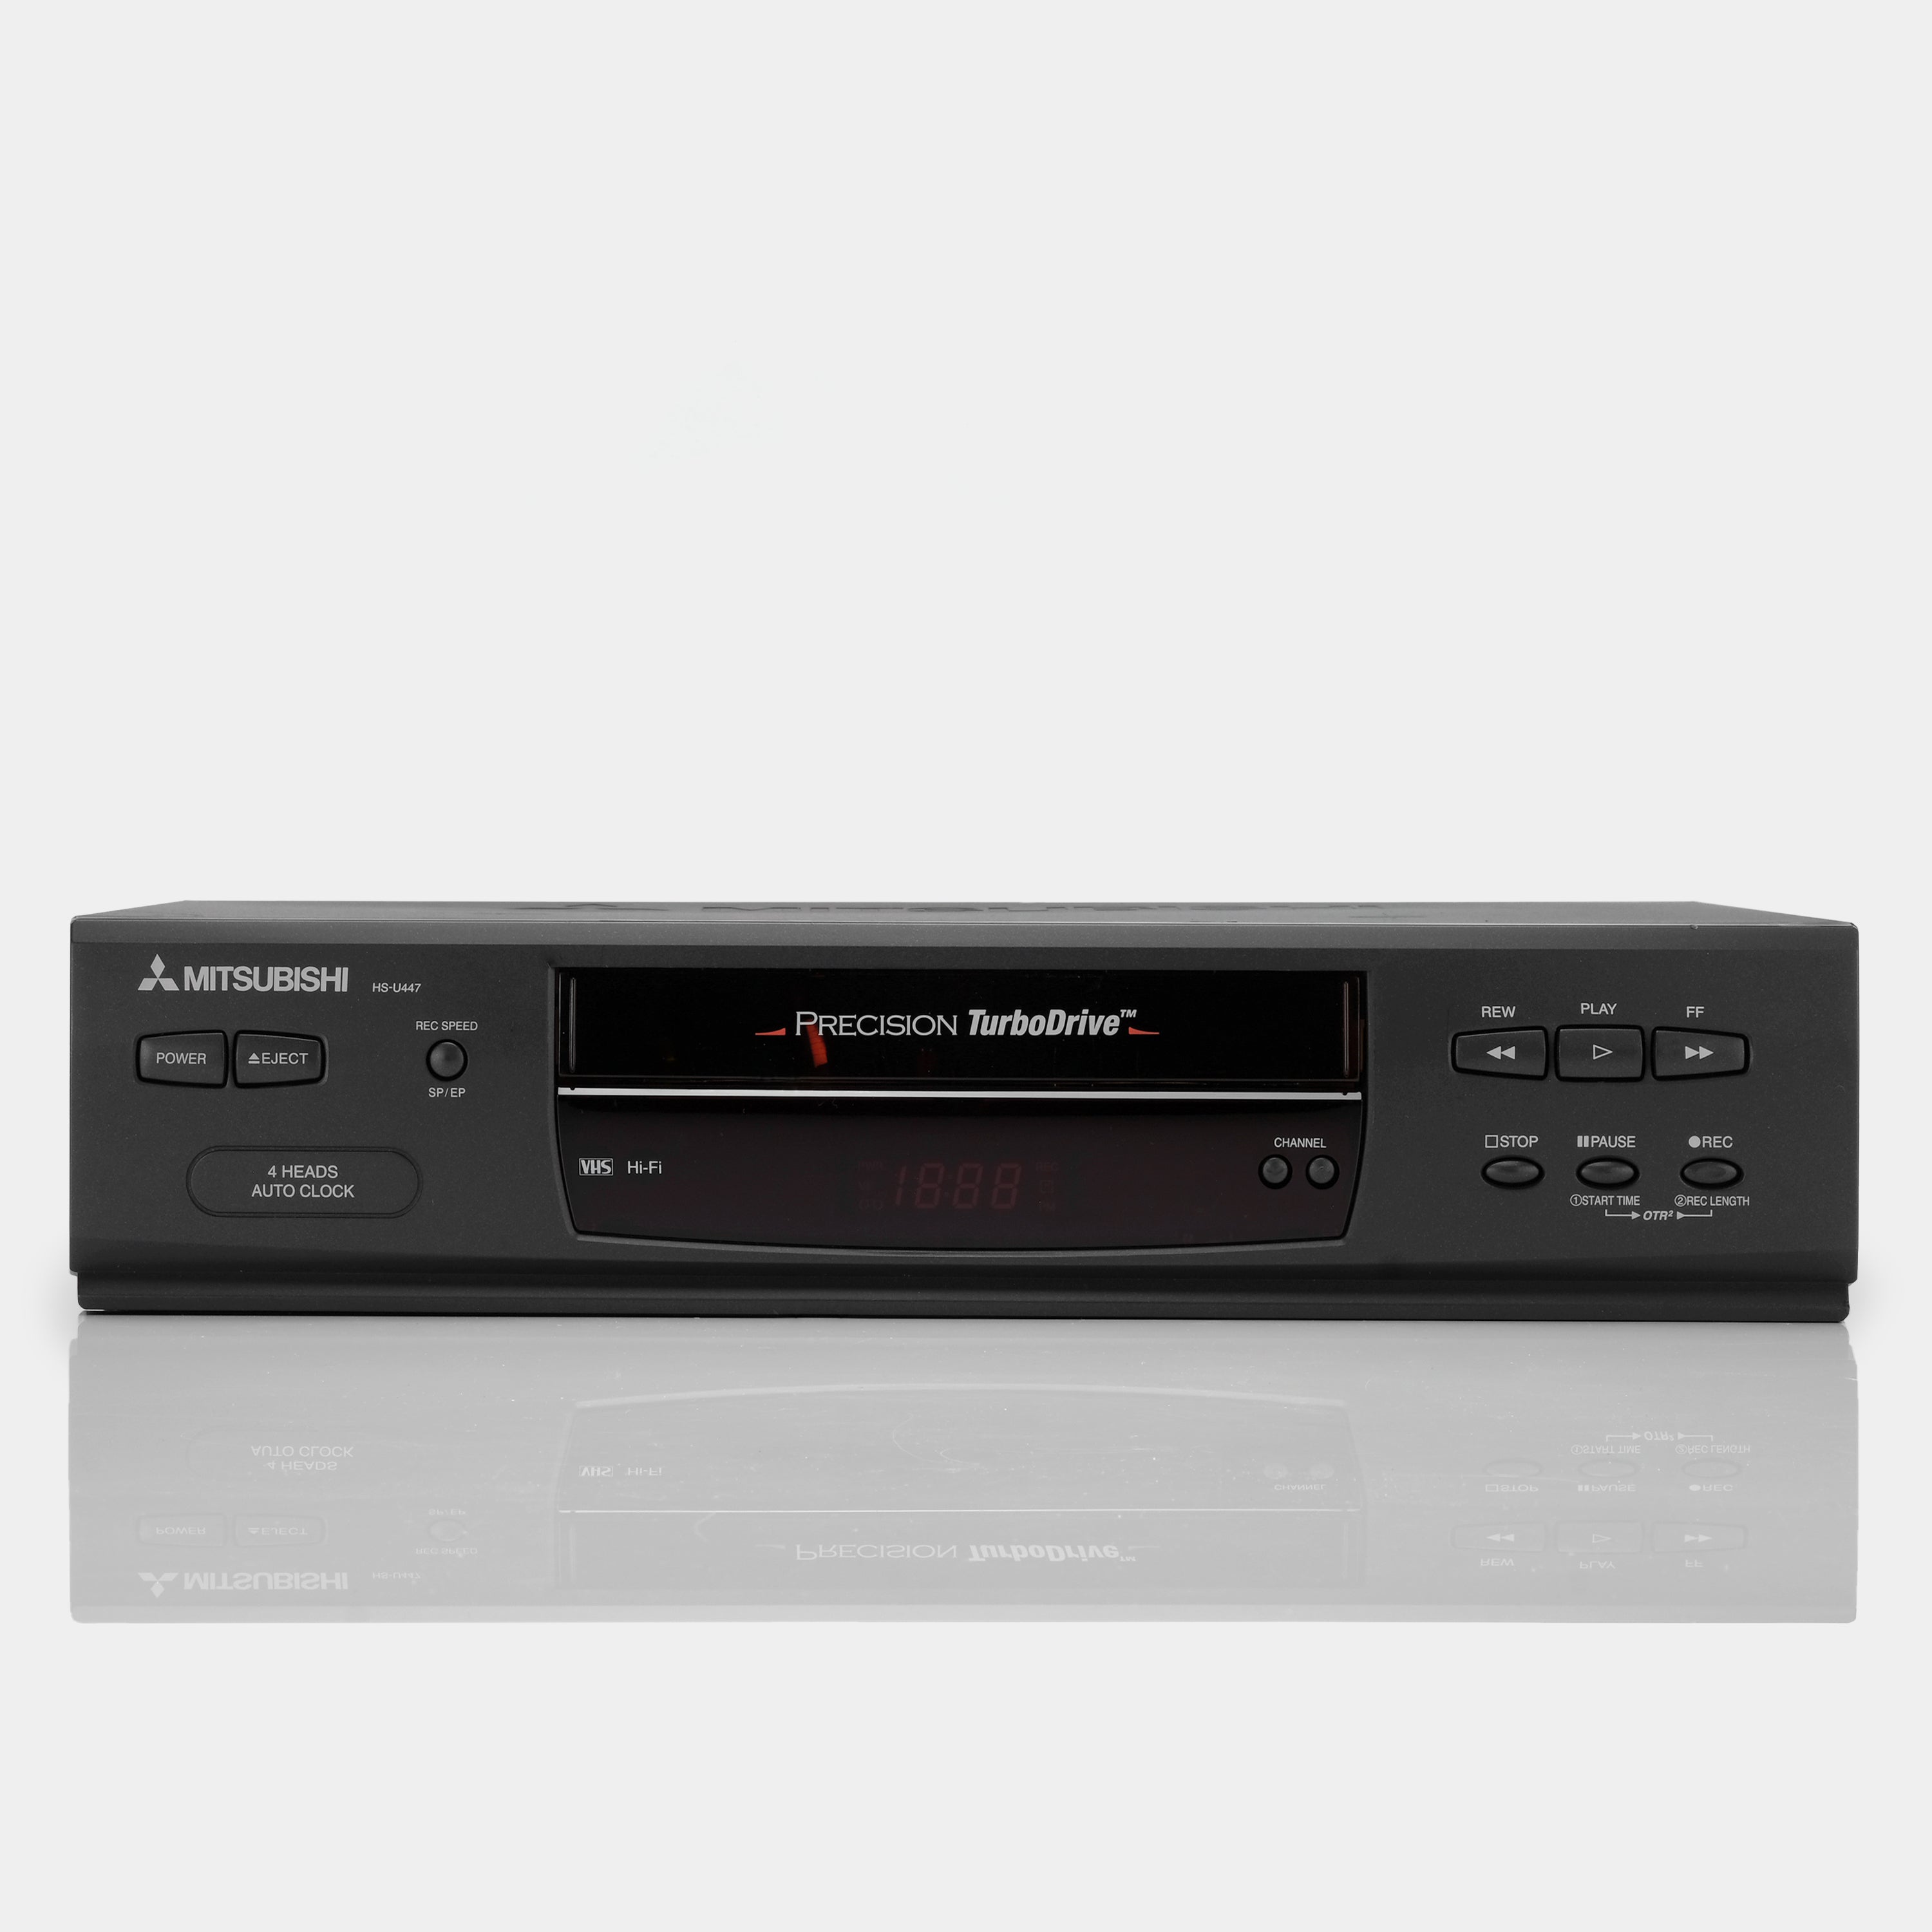 Mitsubishi HS-U447 VCR VHS Player